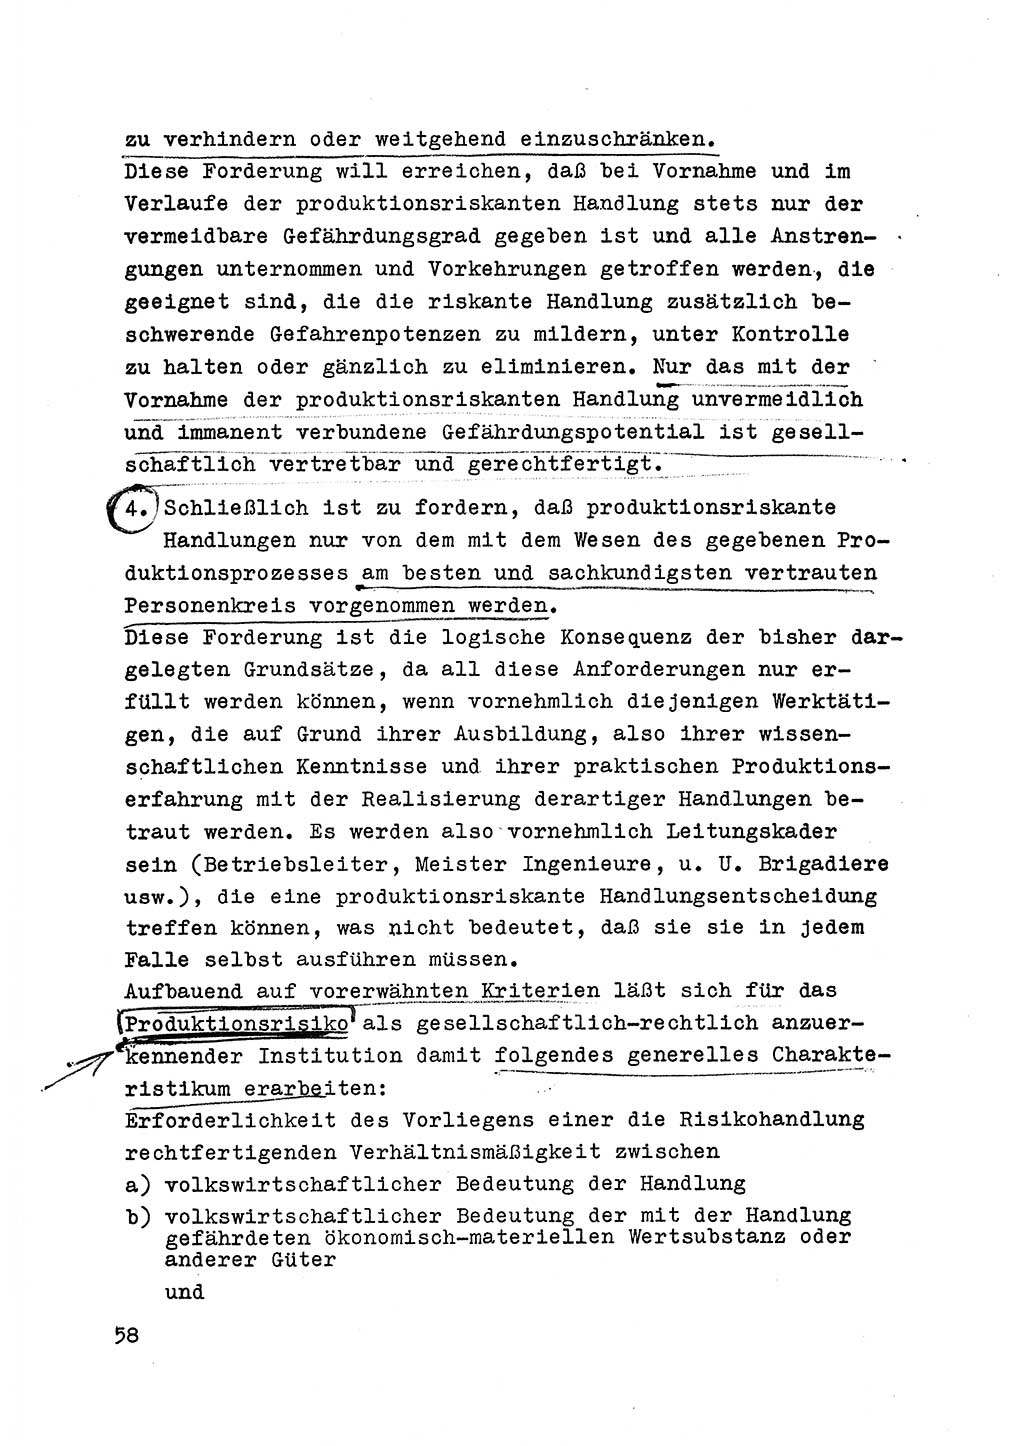 Strafrecht der DDR (Deutsche Demokratische Republik), Besonderer Teil, Lehrmaterial, Heft 6 1970, Seite 58 (Strafr. DDR BT Lehrmat. H. 6 1970, S. 58)